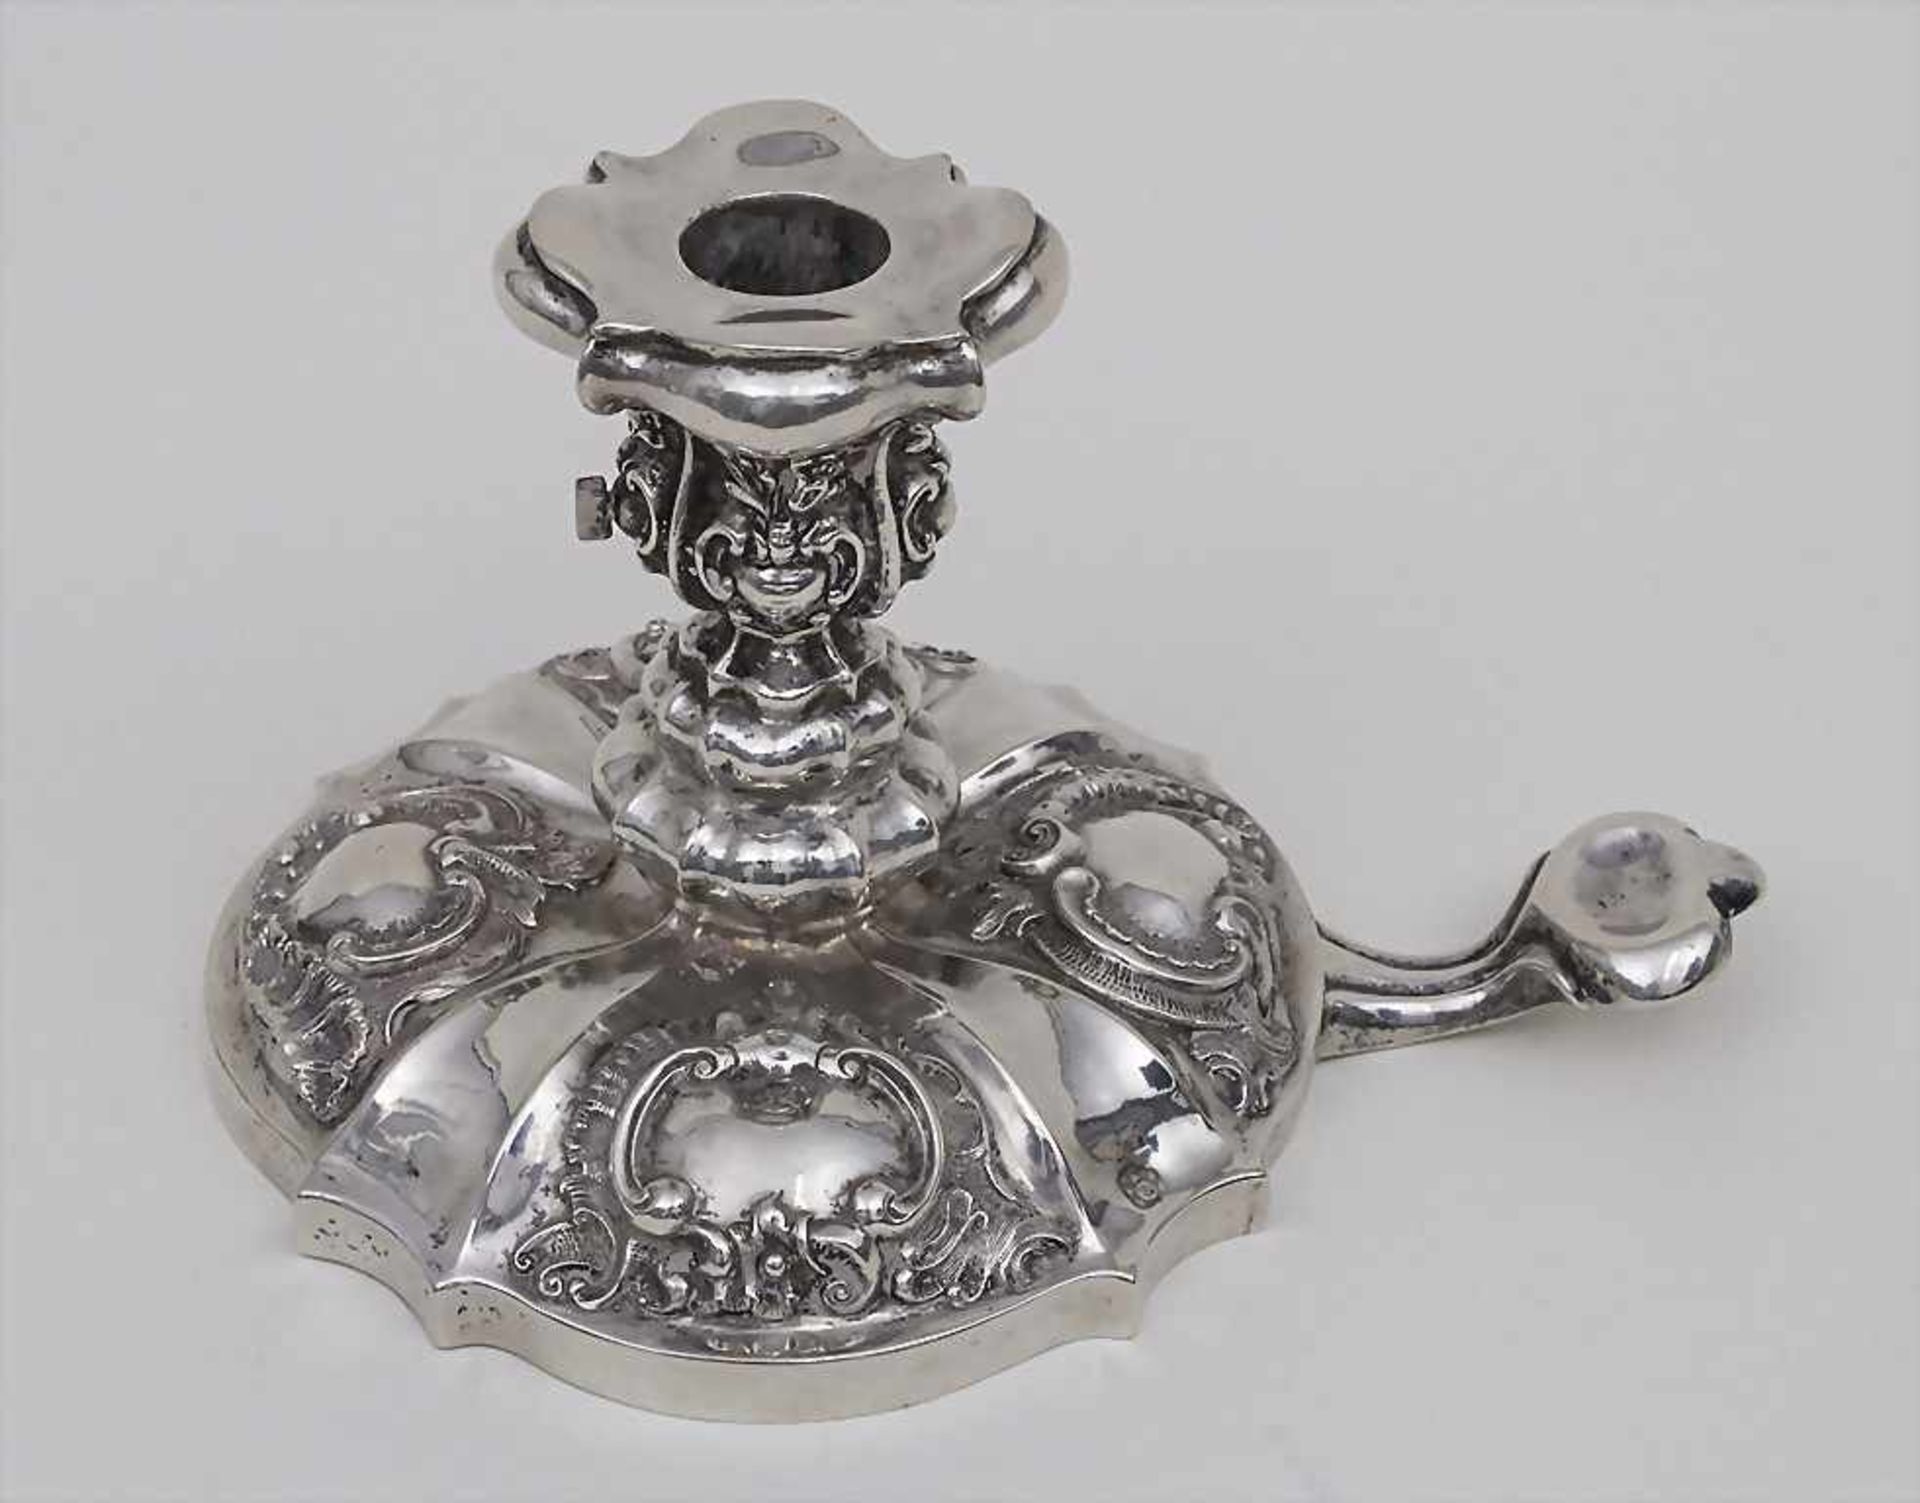 Handleuchter / A portable candlestick, Wien/Vienna, 1846Material: 13 lot Silber, Punzierung: